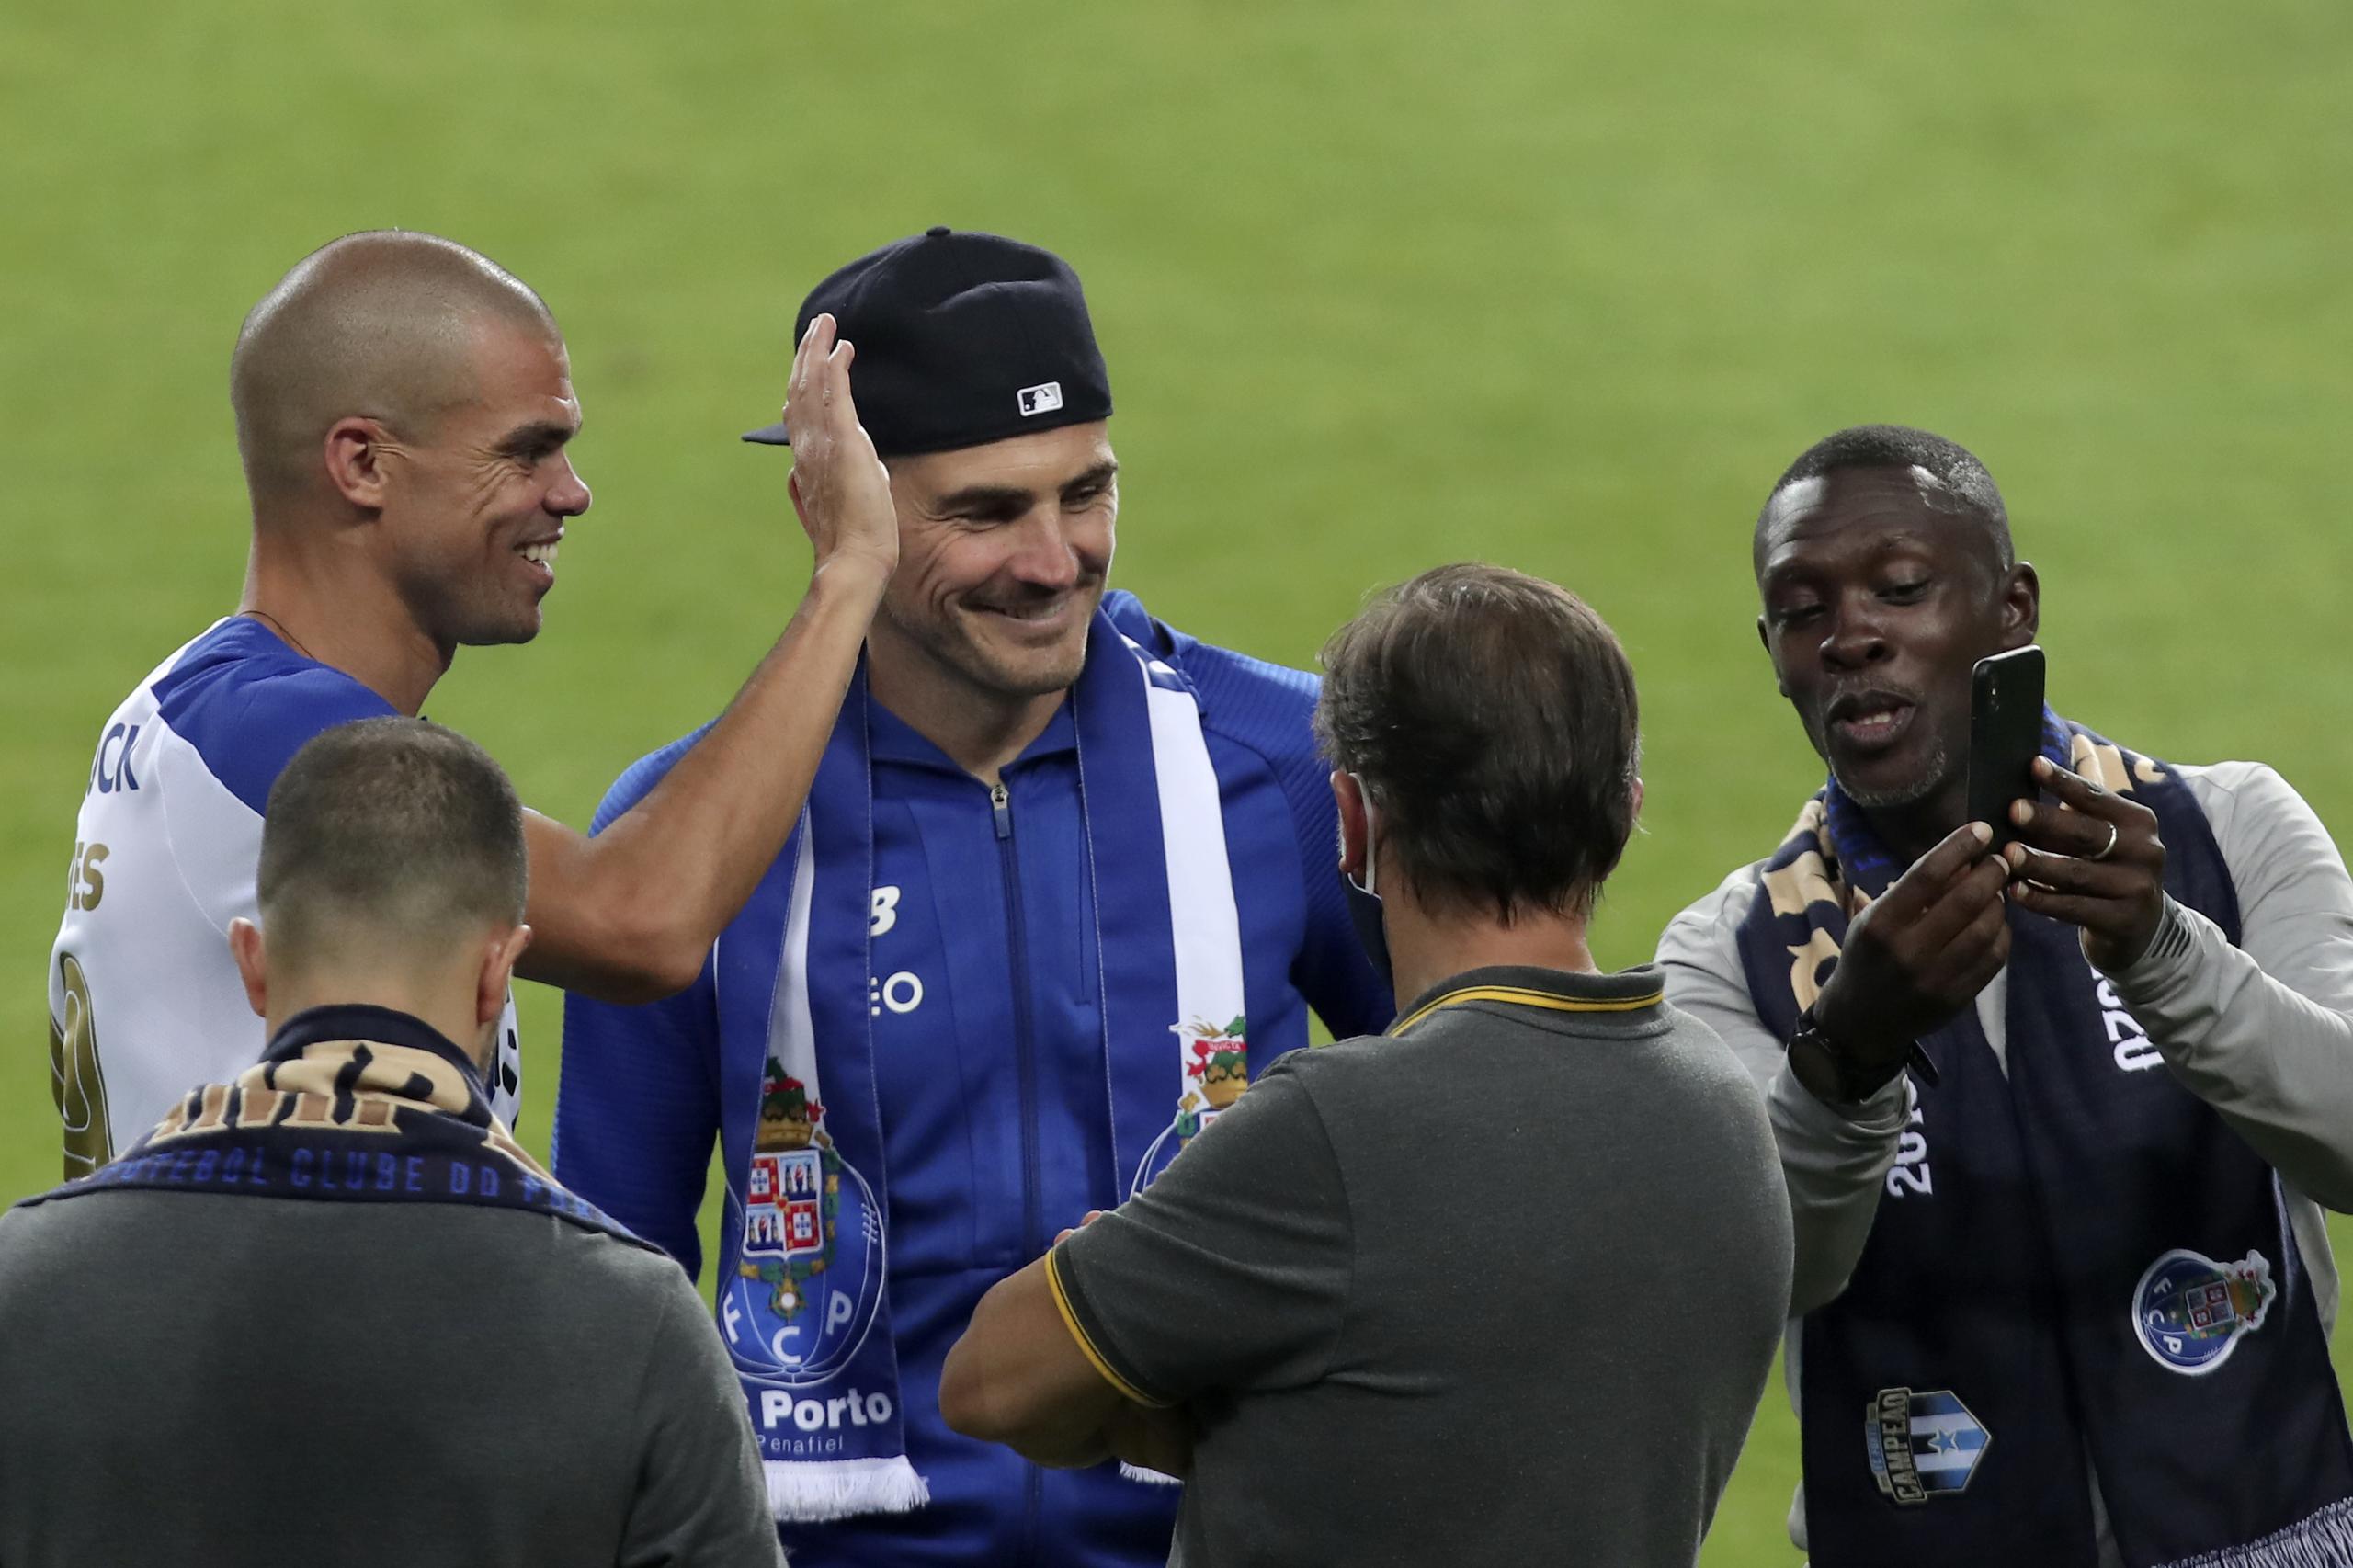 El arquero Iker Casillas (centro) participa en el festejo del Porto tras vencer a Sporting para ganar el título de la liga portuguesa, el miércoles 15 de julio de 2020.